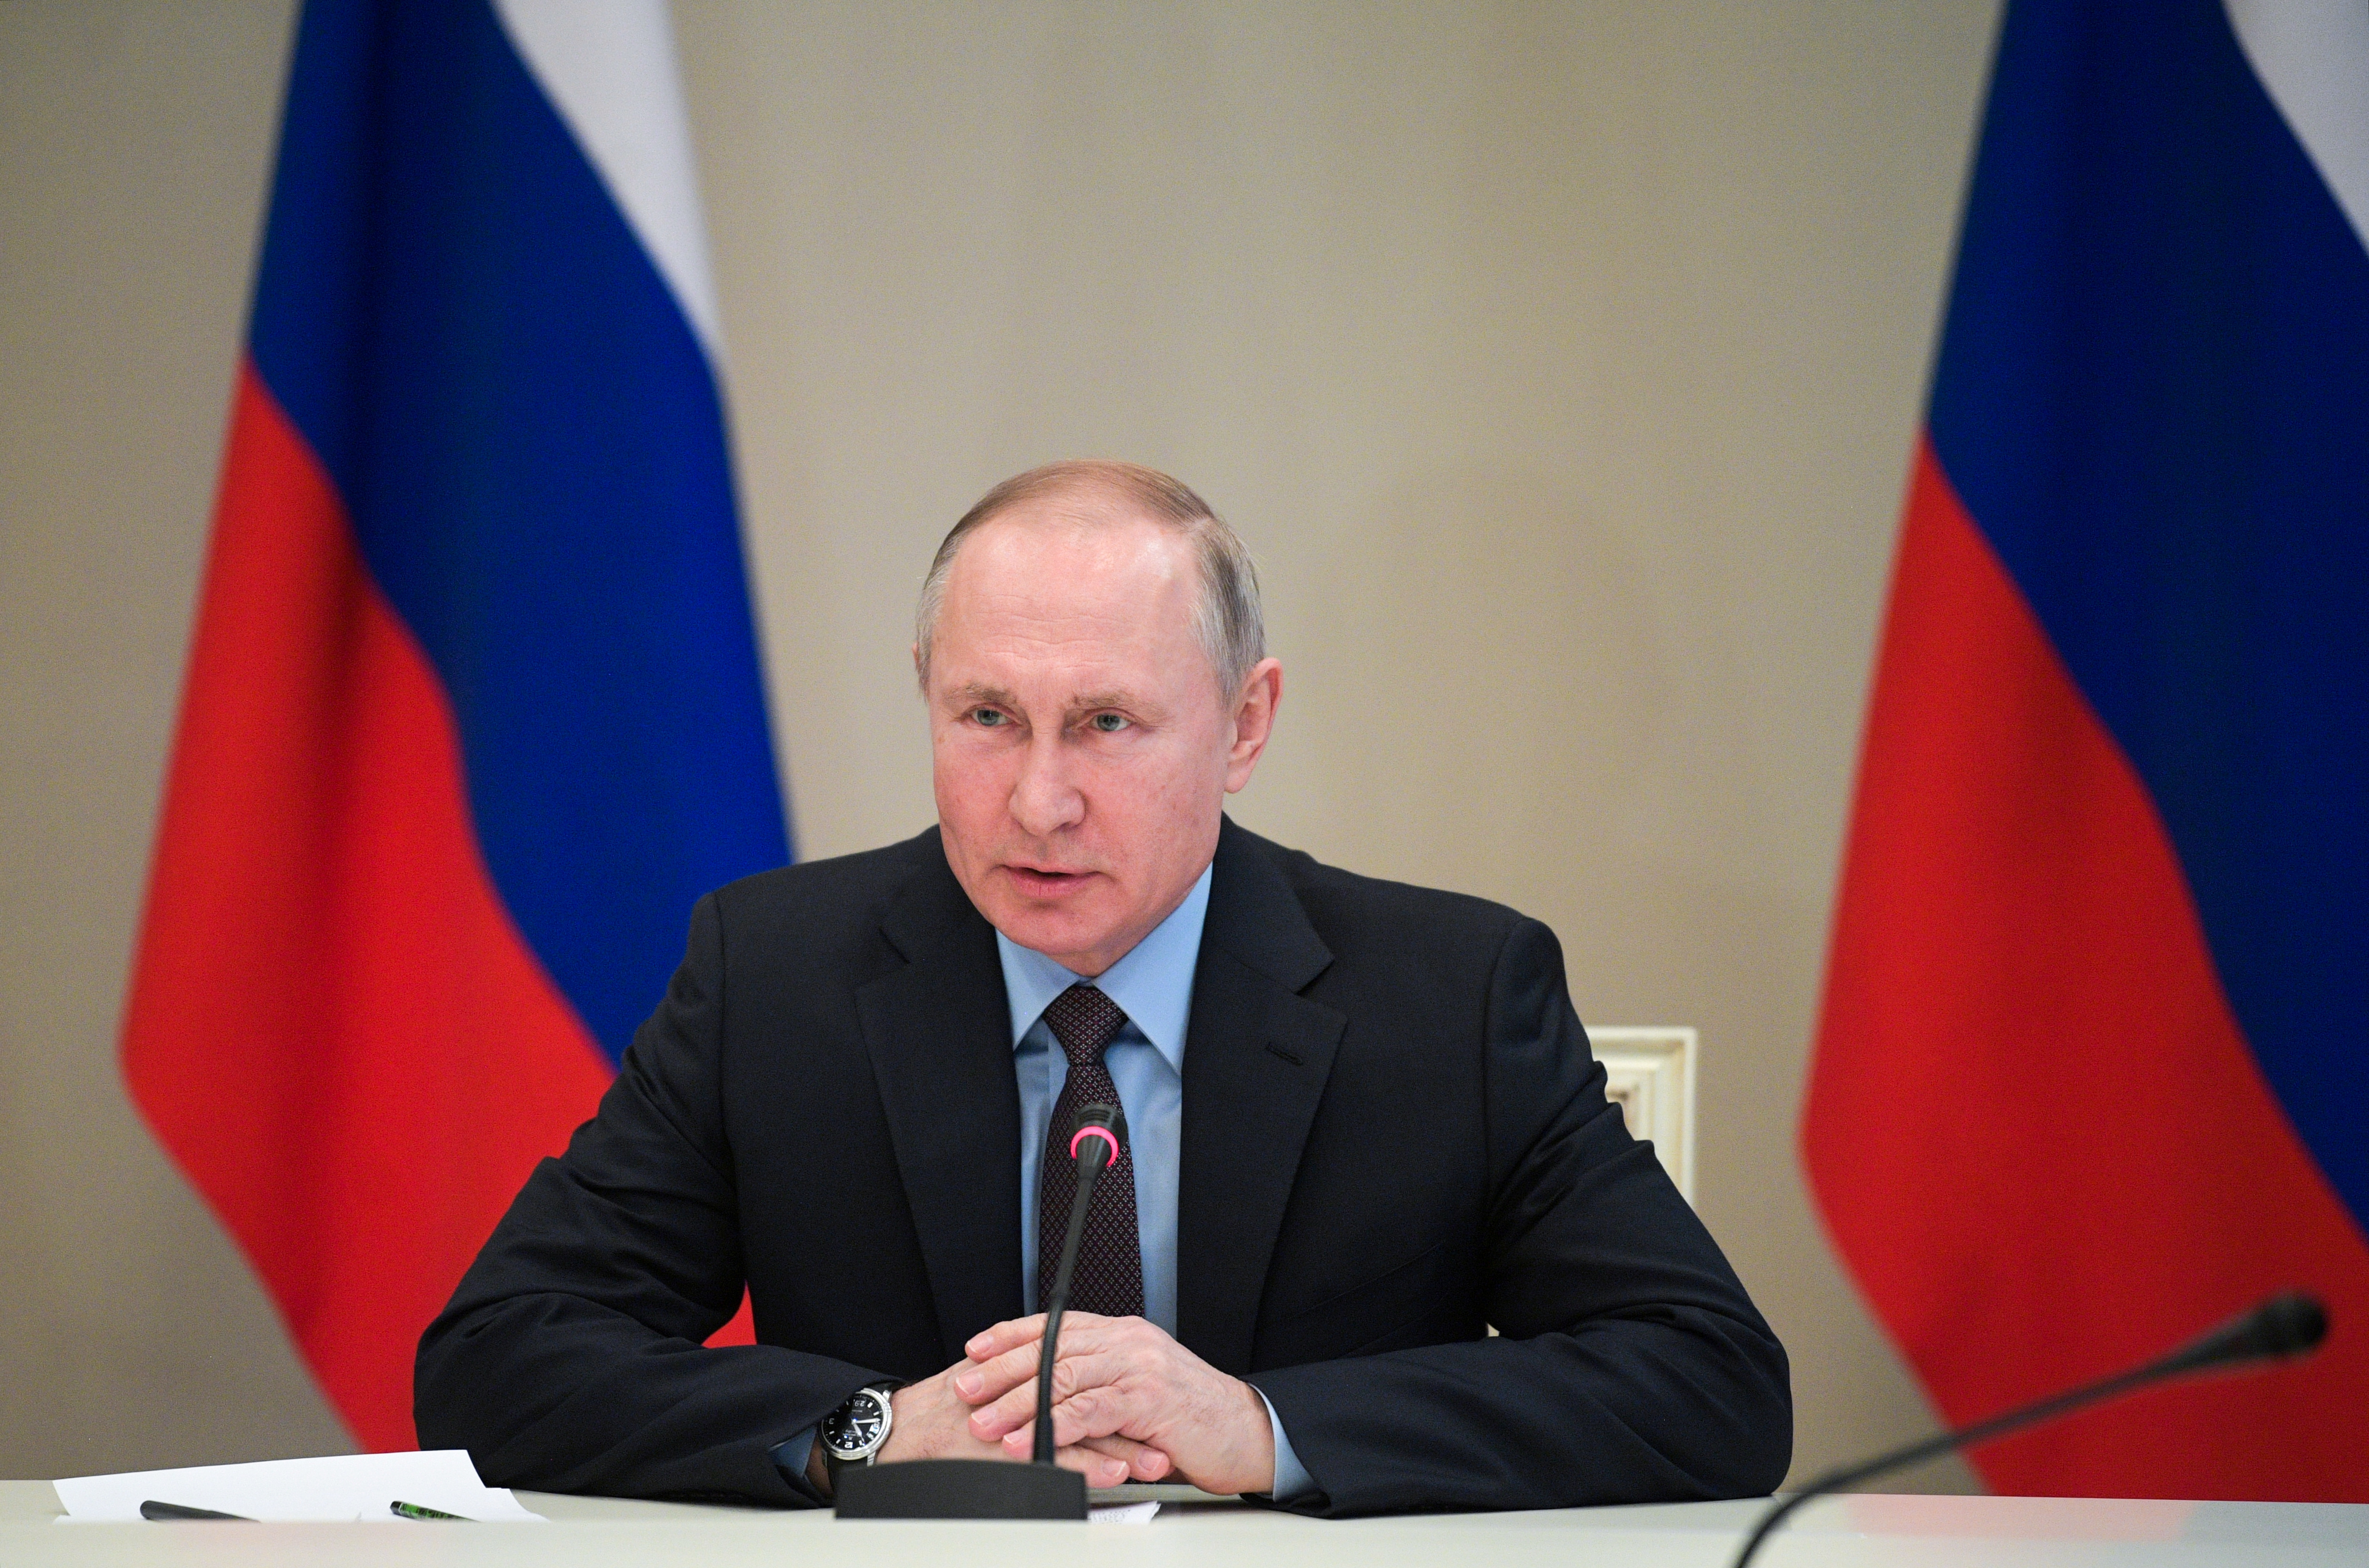 A qué se debe que las relaciones entre Estados Unidos y Rusia sean tan  difíciles?